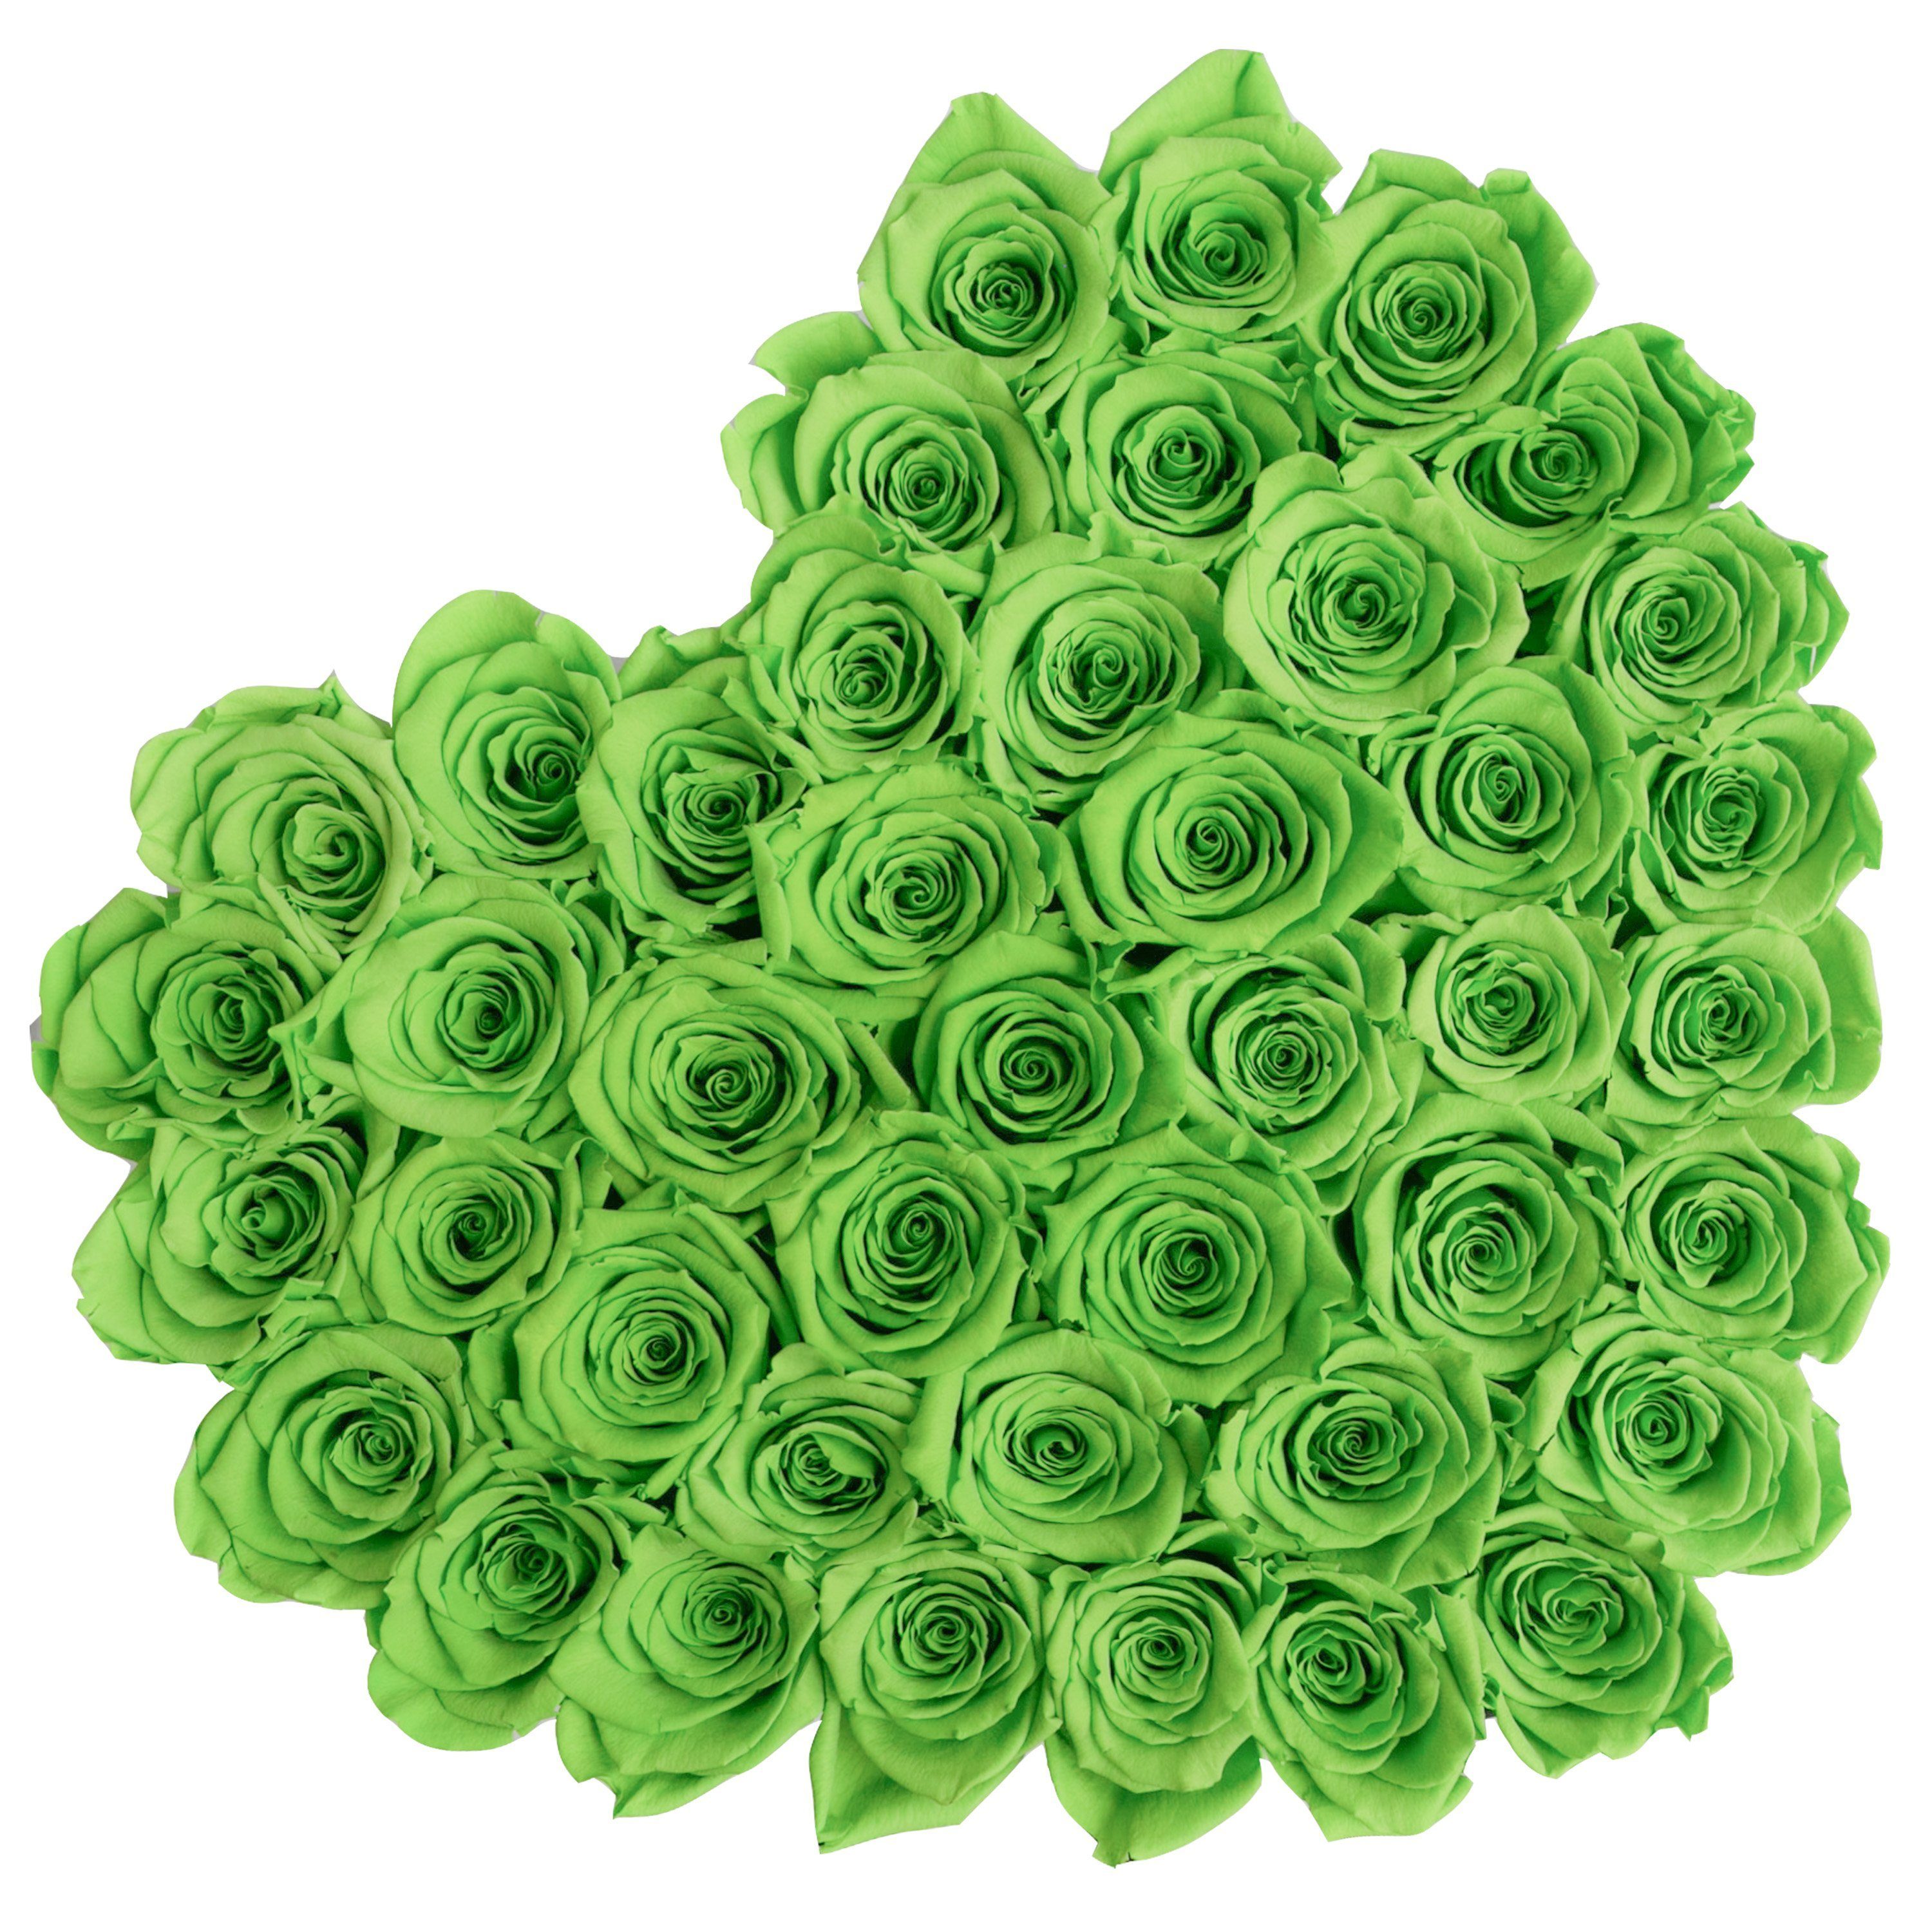 LOVE box - black - light-green roses green eternity roses - the million roses